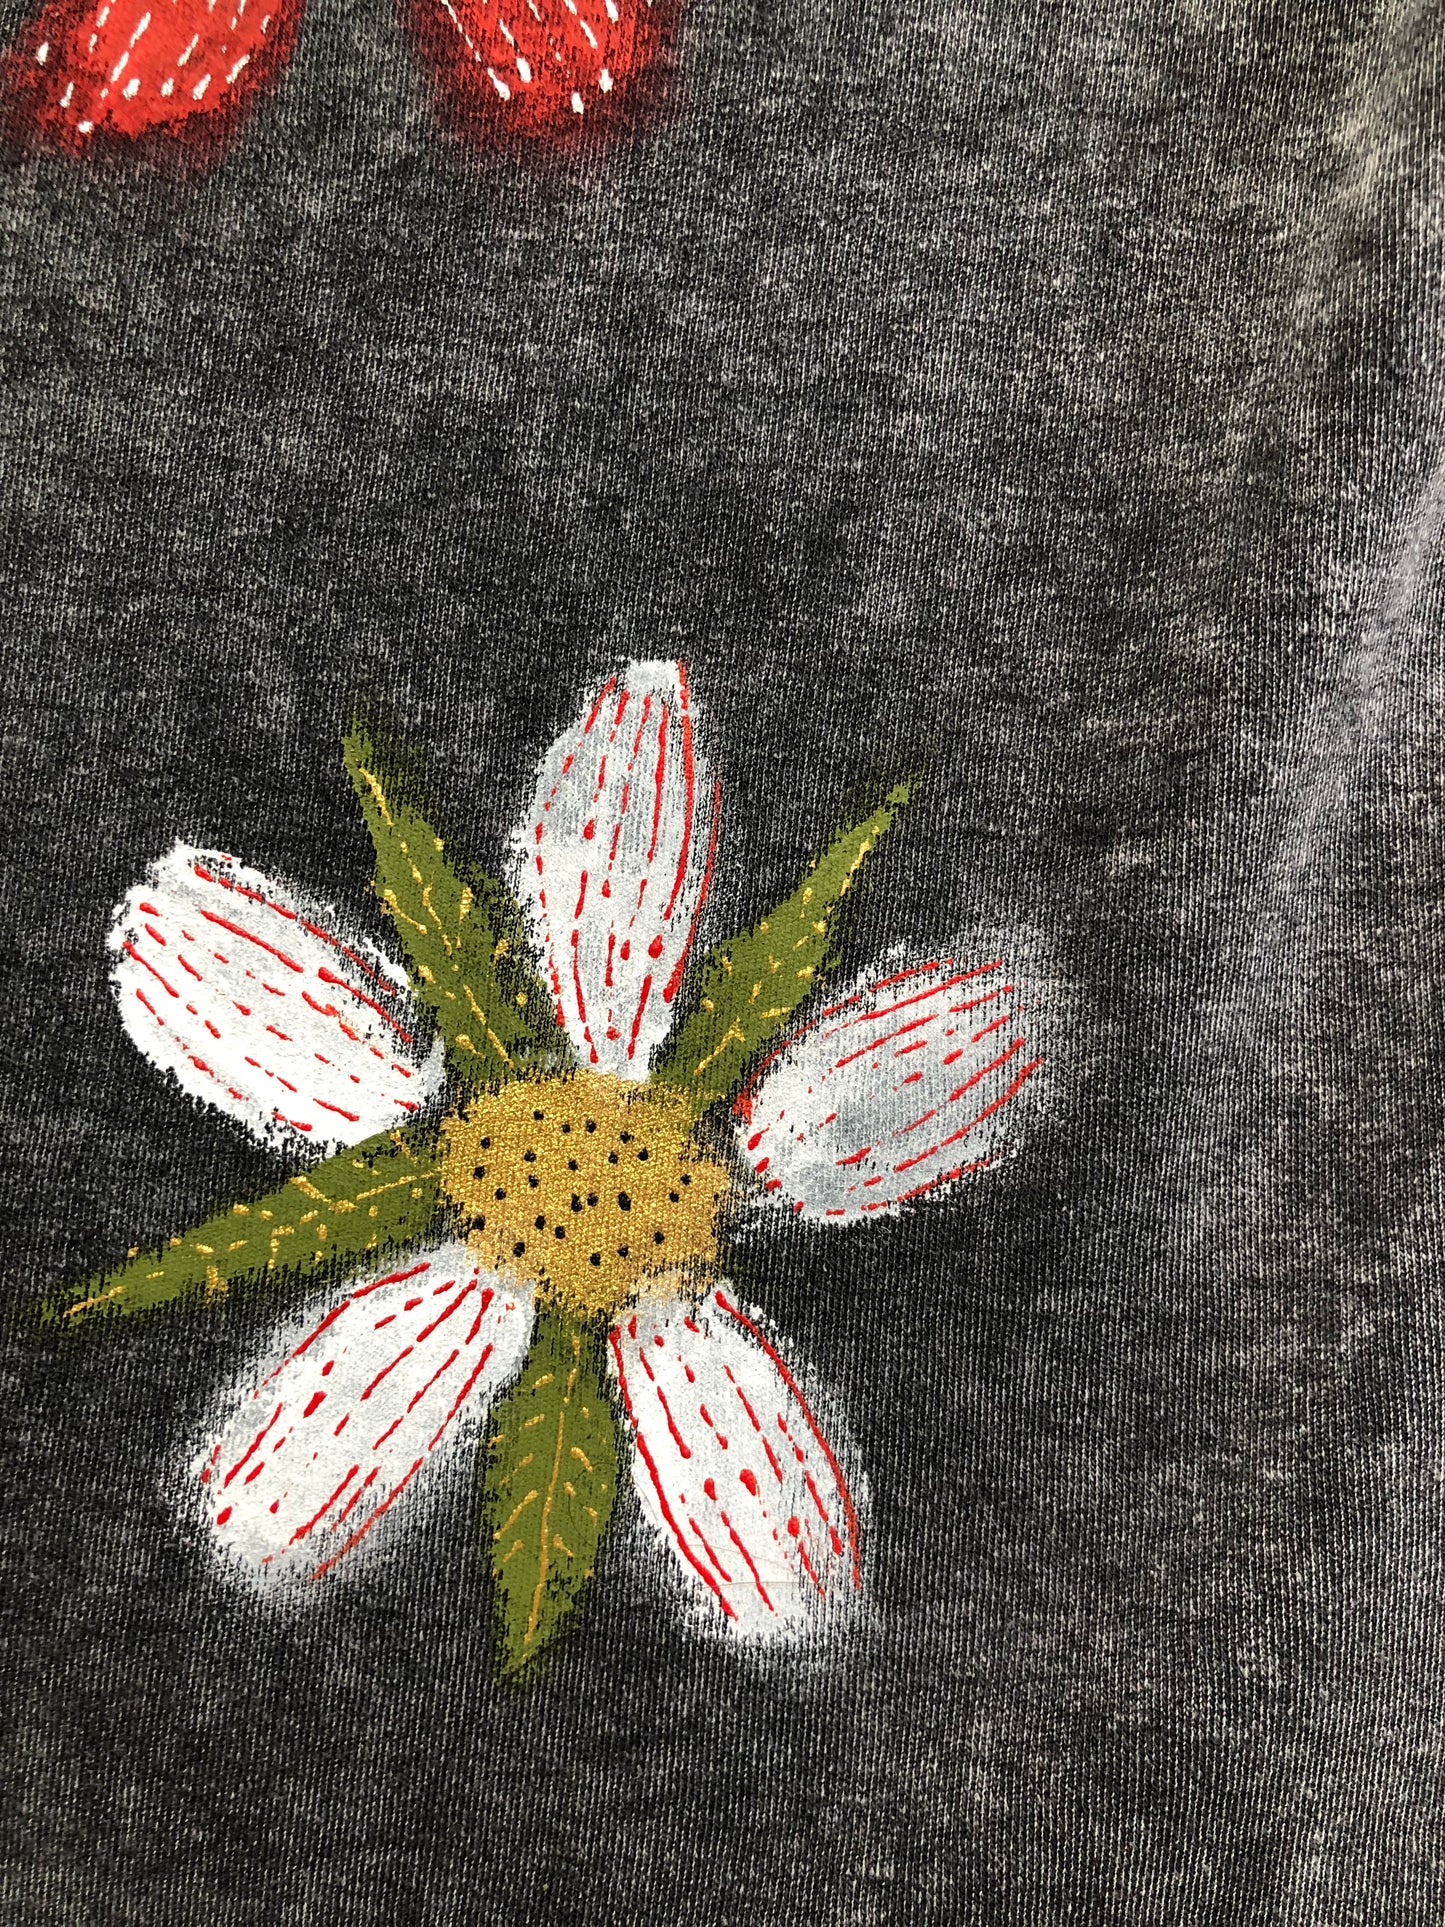 Flower design on a T -shirt